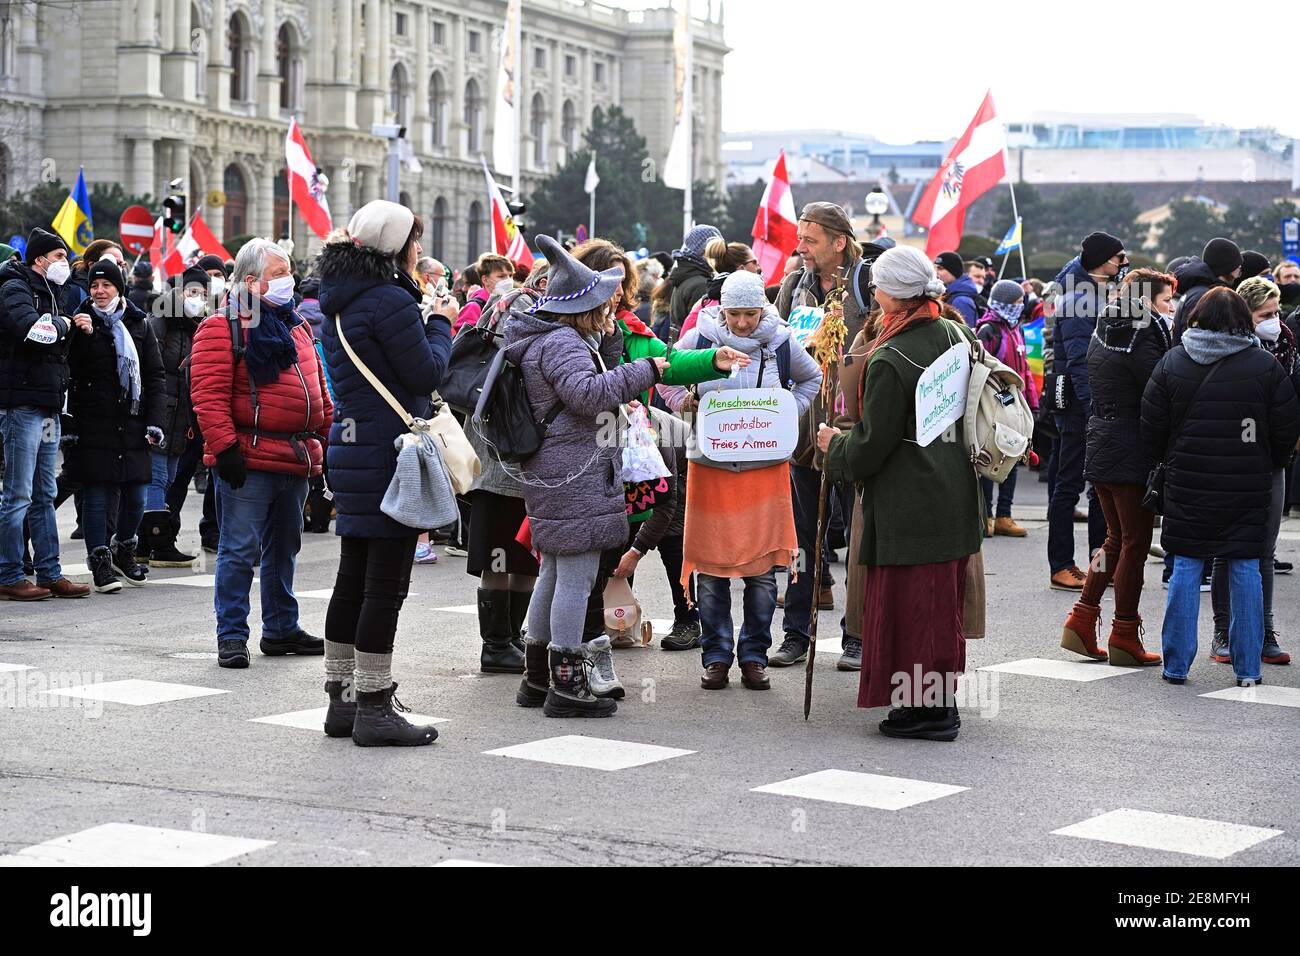 31 janvier 2021. Vienne, Autriche. Une manifestation anti corona non enregistrée avec plusieurs milliers de personnes a été encerclée et décomposée par la police. Un signe qui lit « la dignité humaine est inviolable ». Banque D'Images